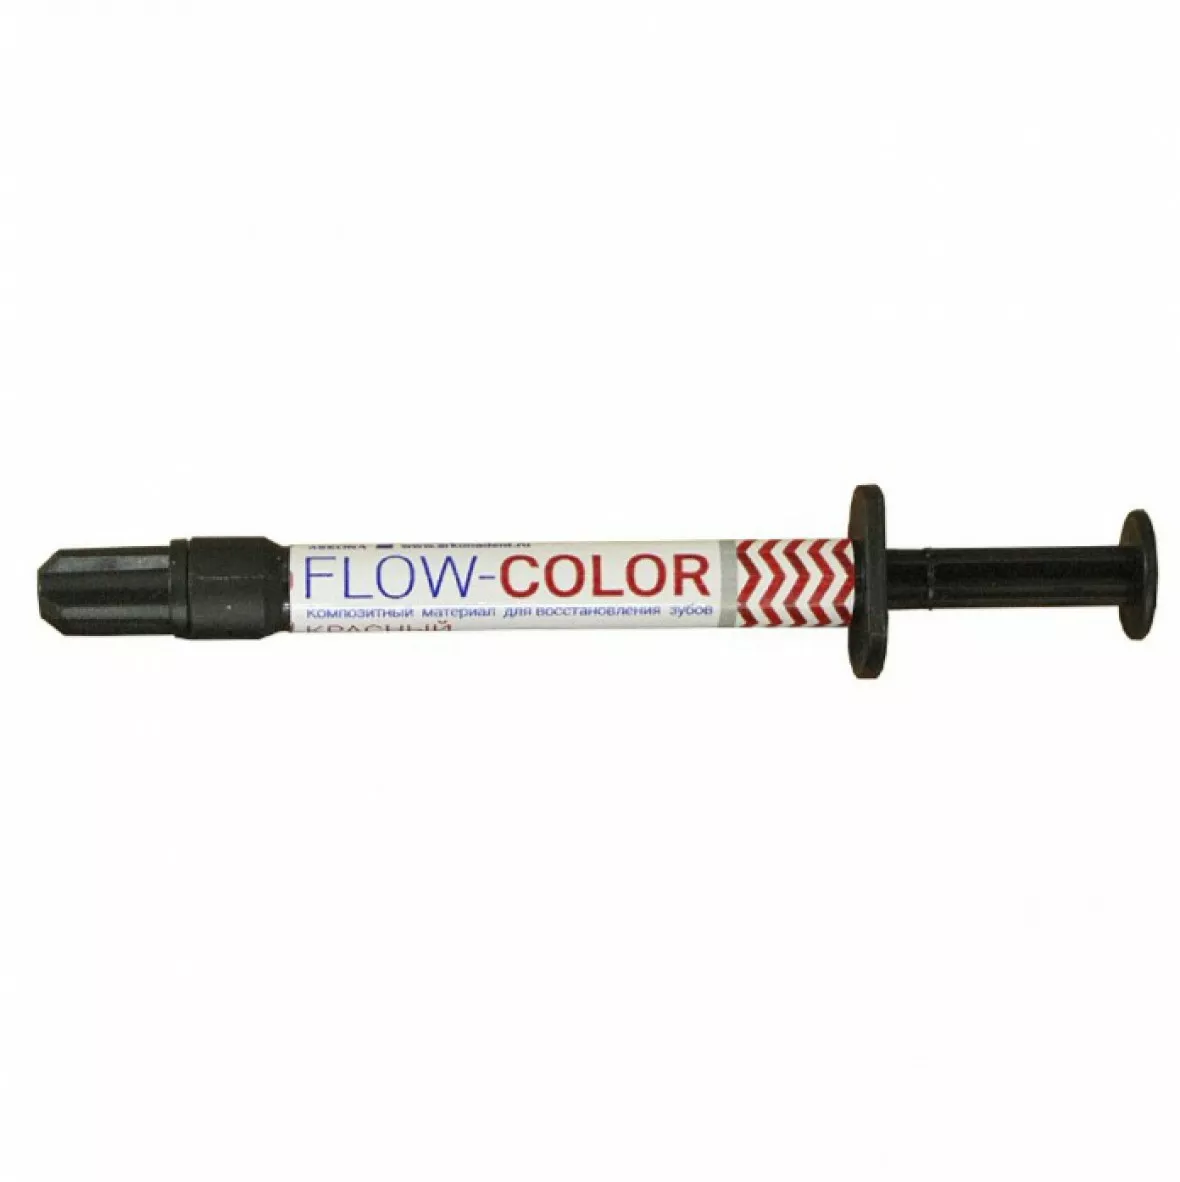 FLOW-COLOR - цветной композит, Красный